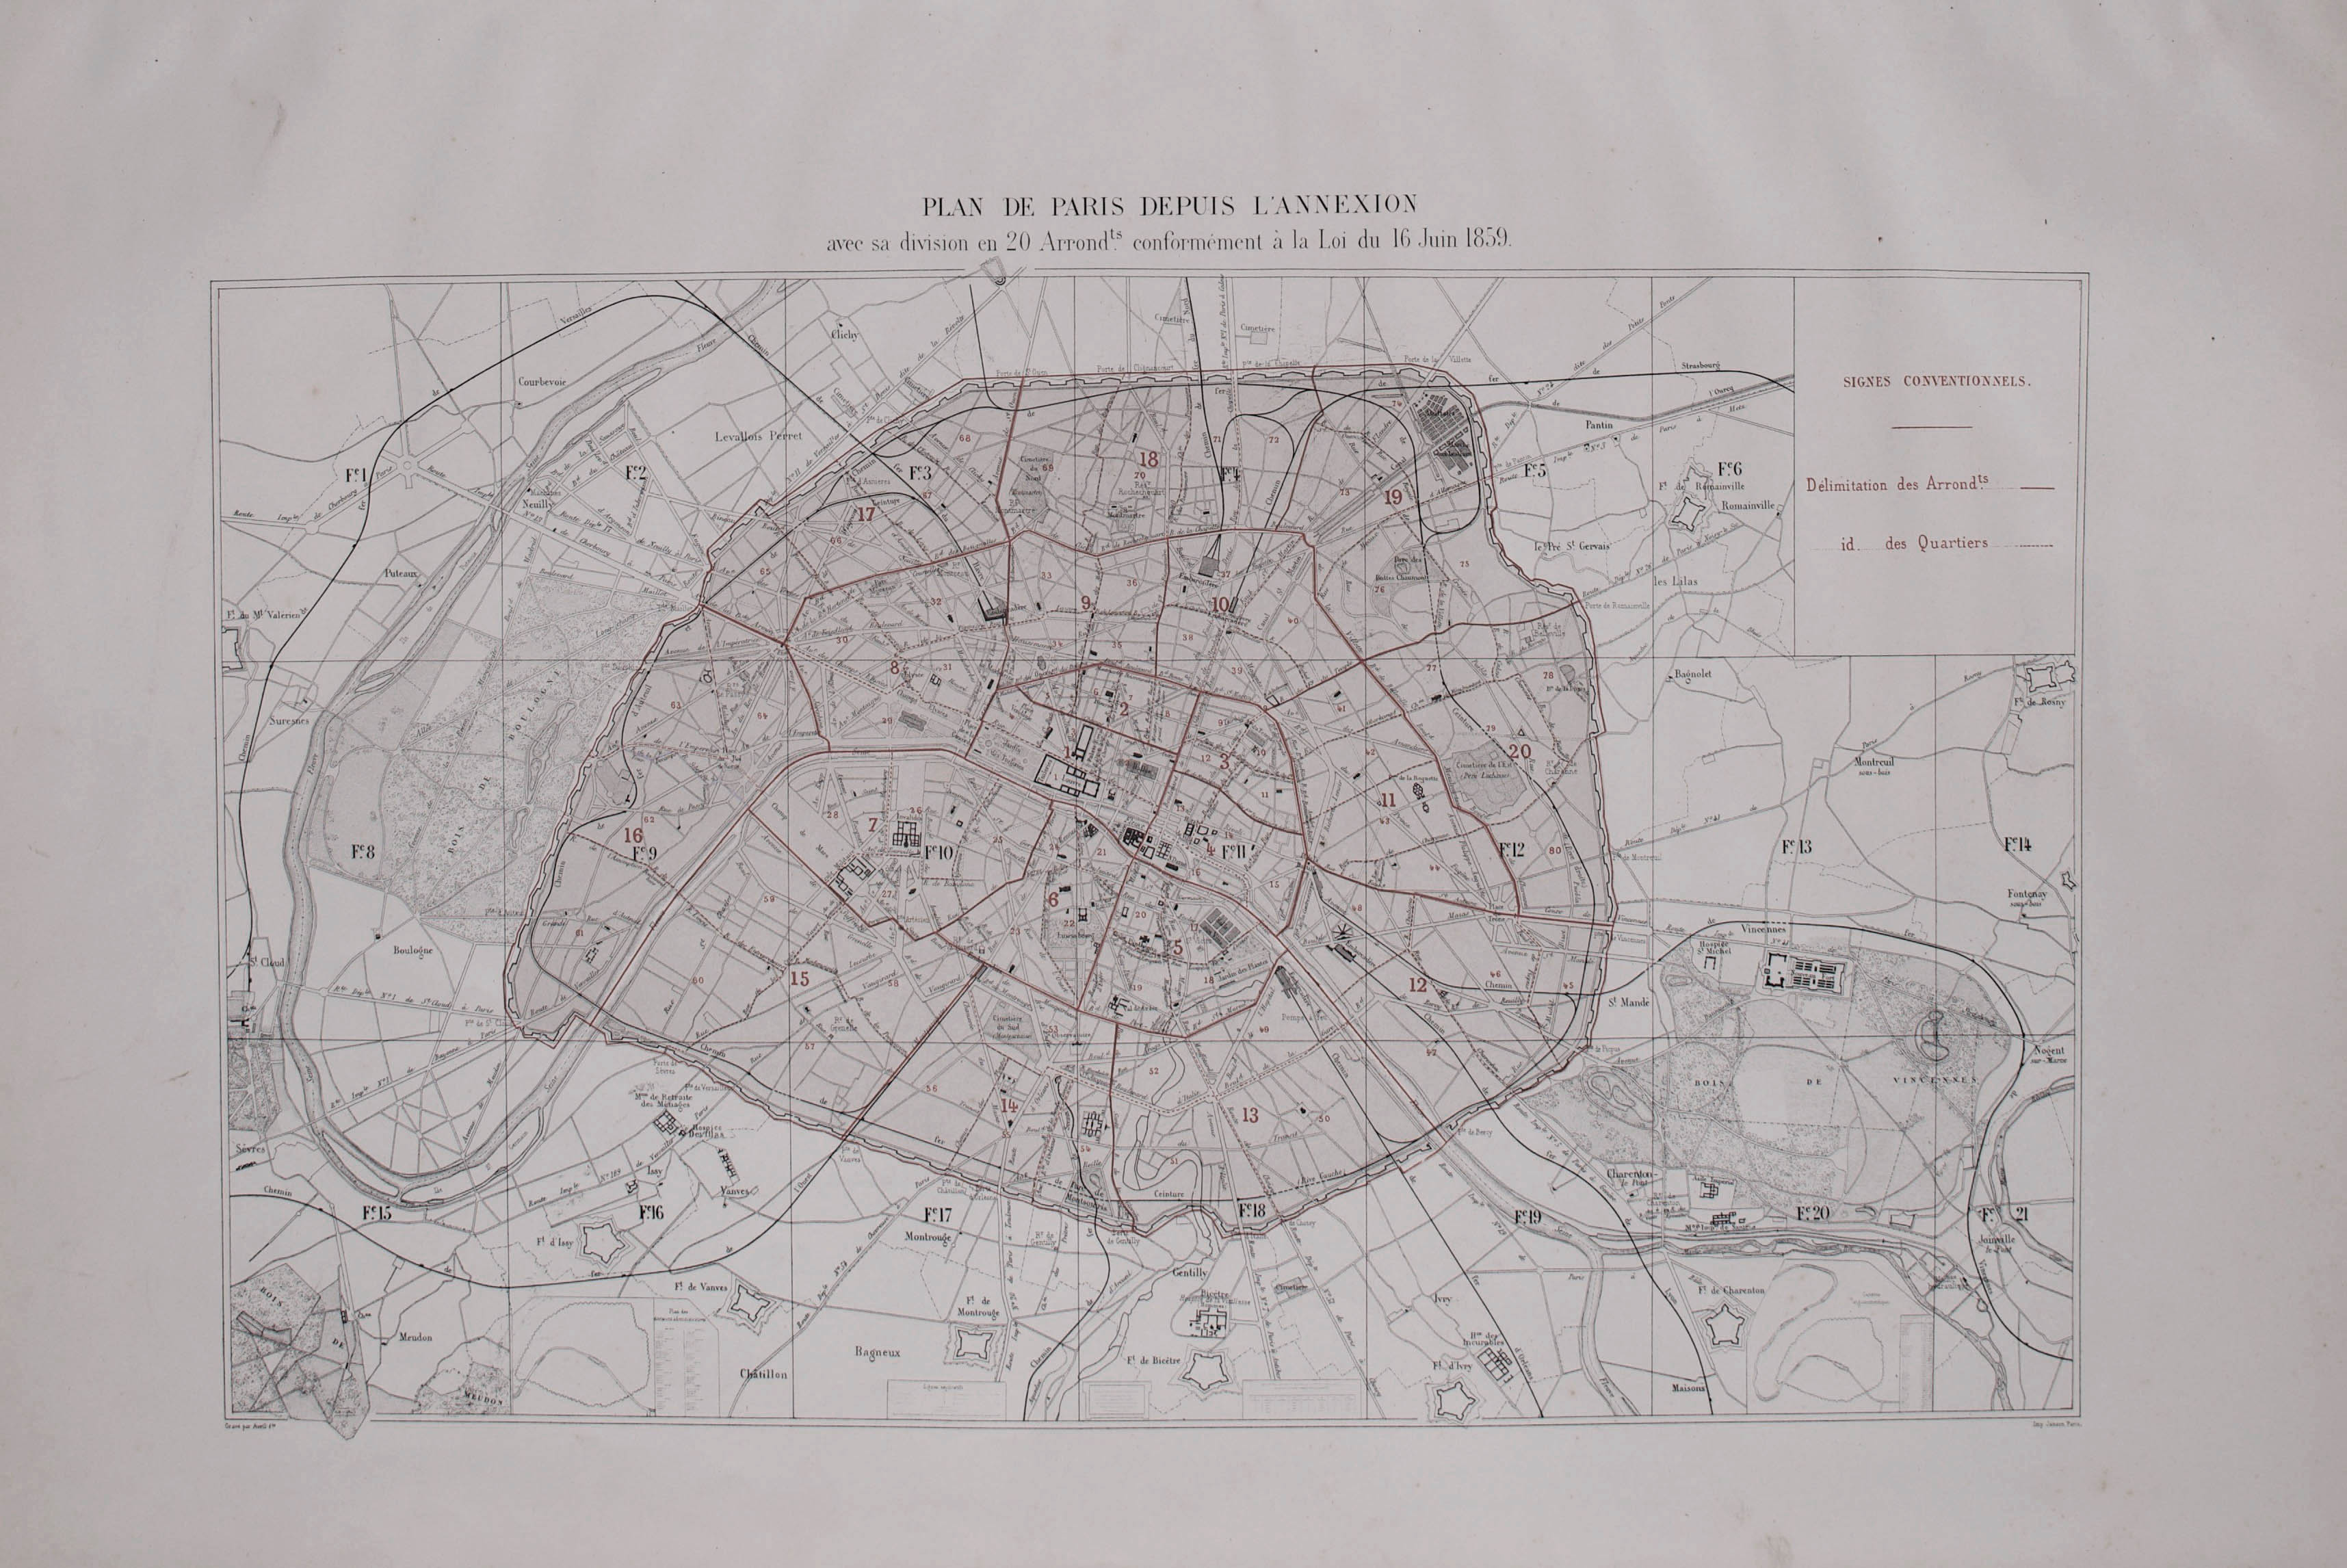 Plan de Paris depuis l'annexion © Cité de l'architecture & du patrimoine/Musée des Monuments français